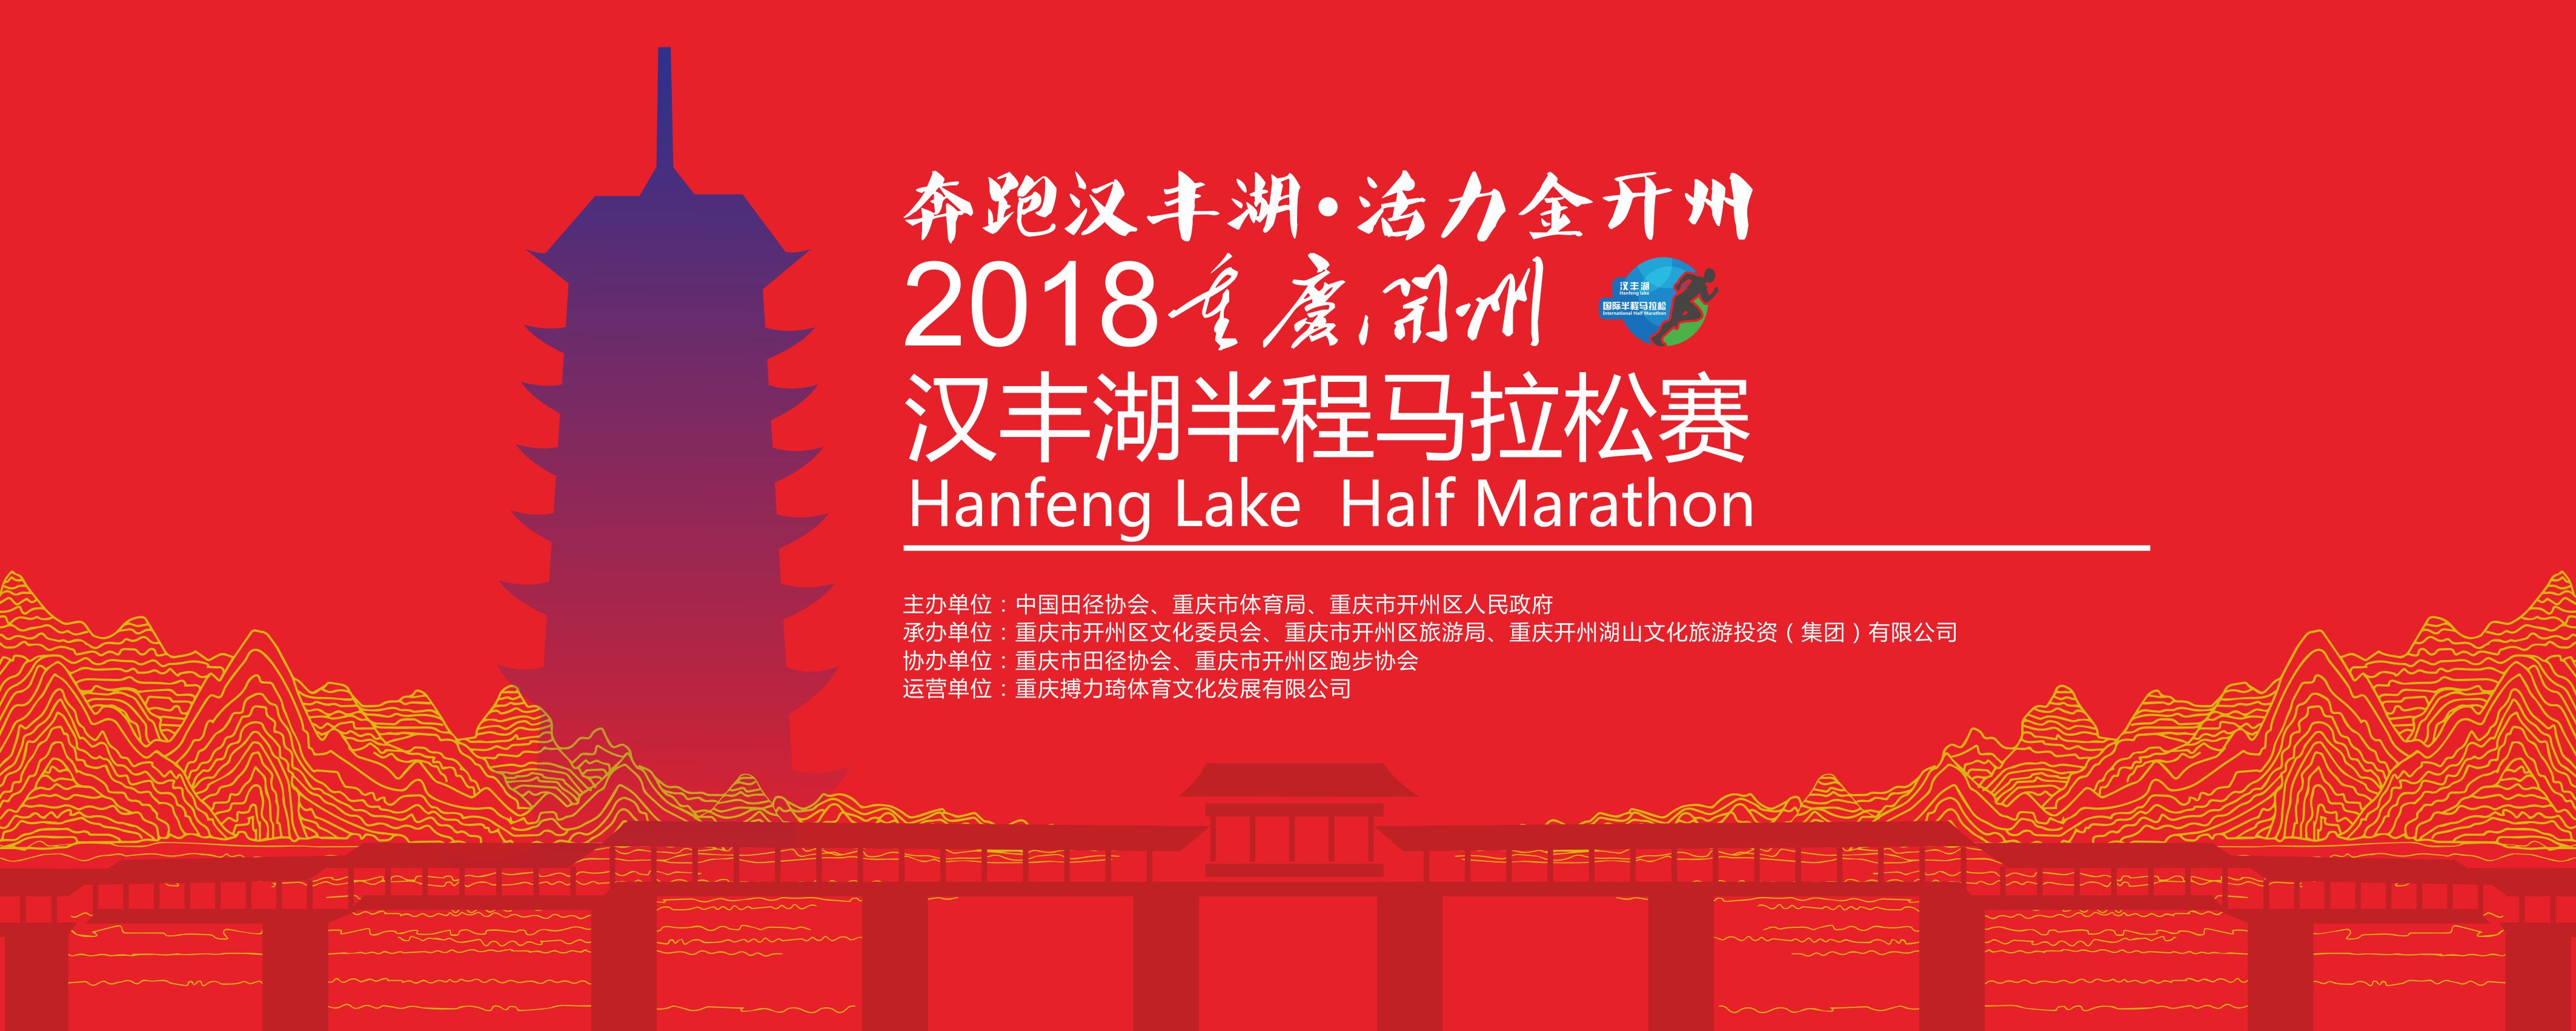 2018重庆开州汉丰湖半程马拉松赛